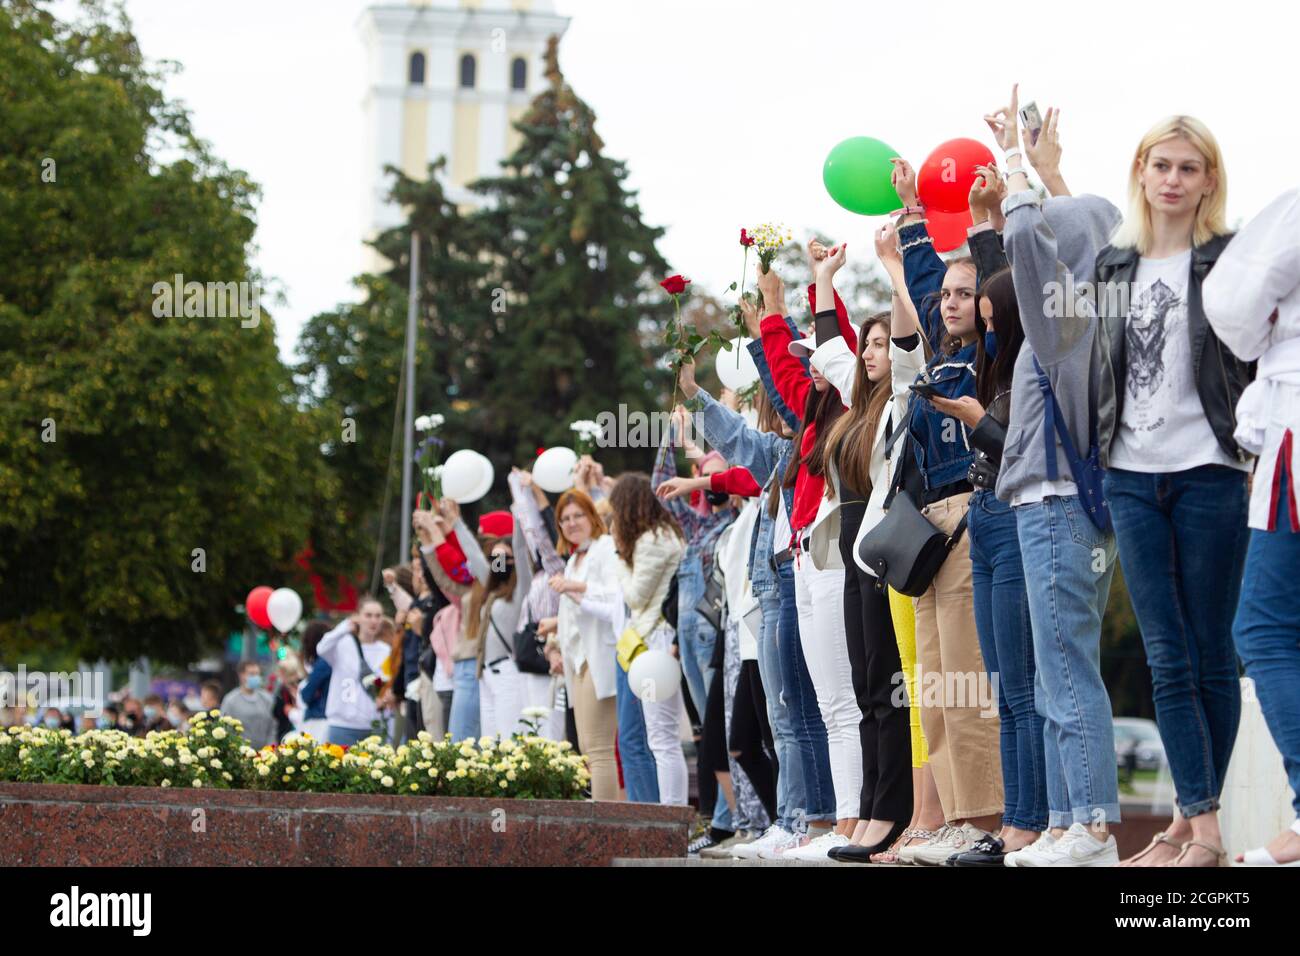 Rassemblement pacifique en Biélorussie contre le dictateur. Des femmes à une manifestation pacifique au Bélarus. Banque D'Images